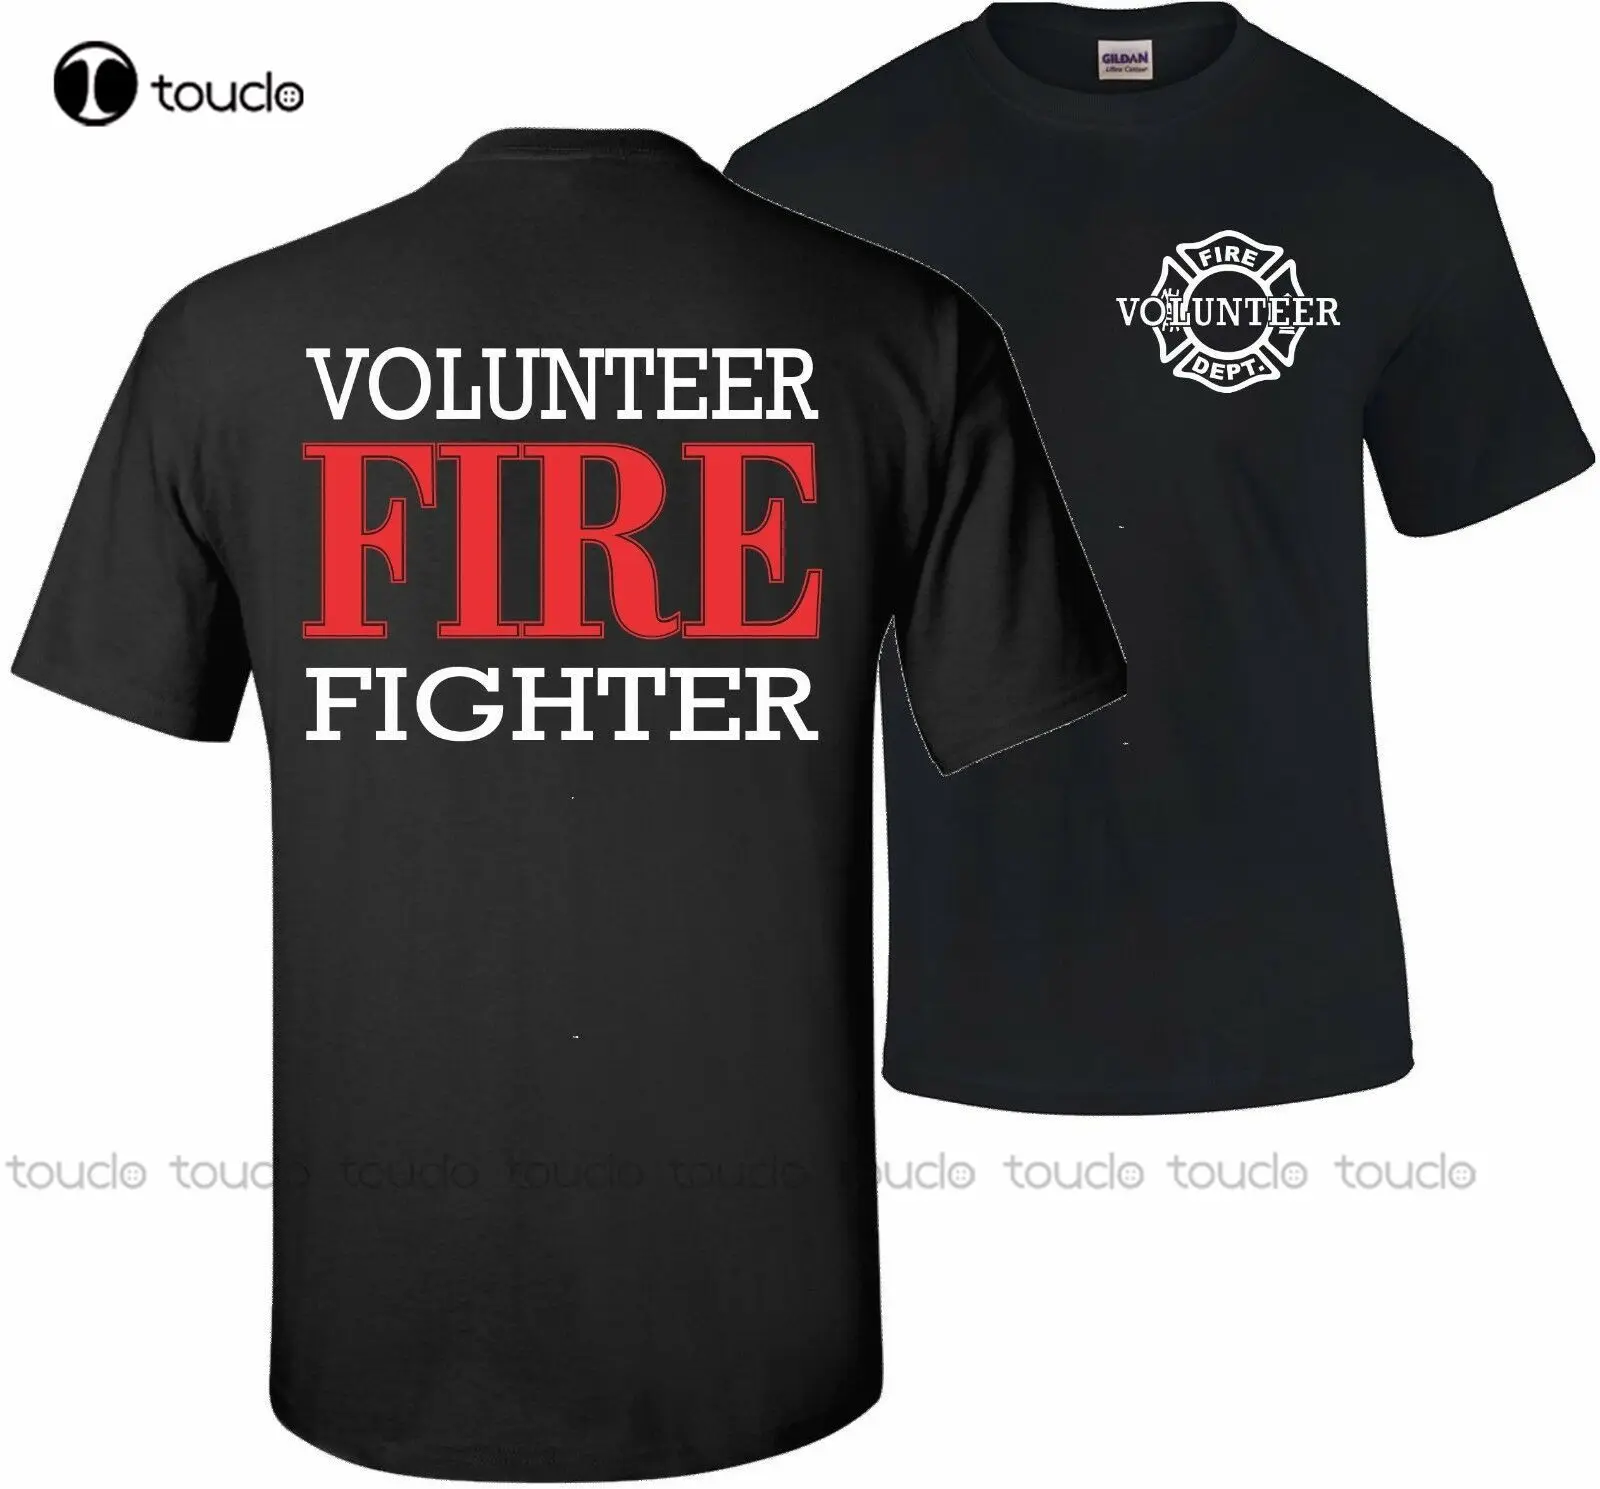 Firefighter Volunteer Fire Rescue Thin Red Line Department Tshirt T Shirt Unisex Women Men Tee Shirt